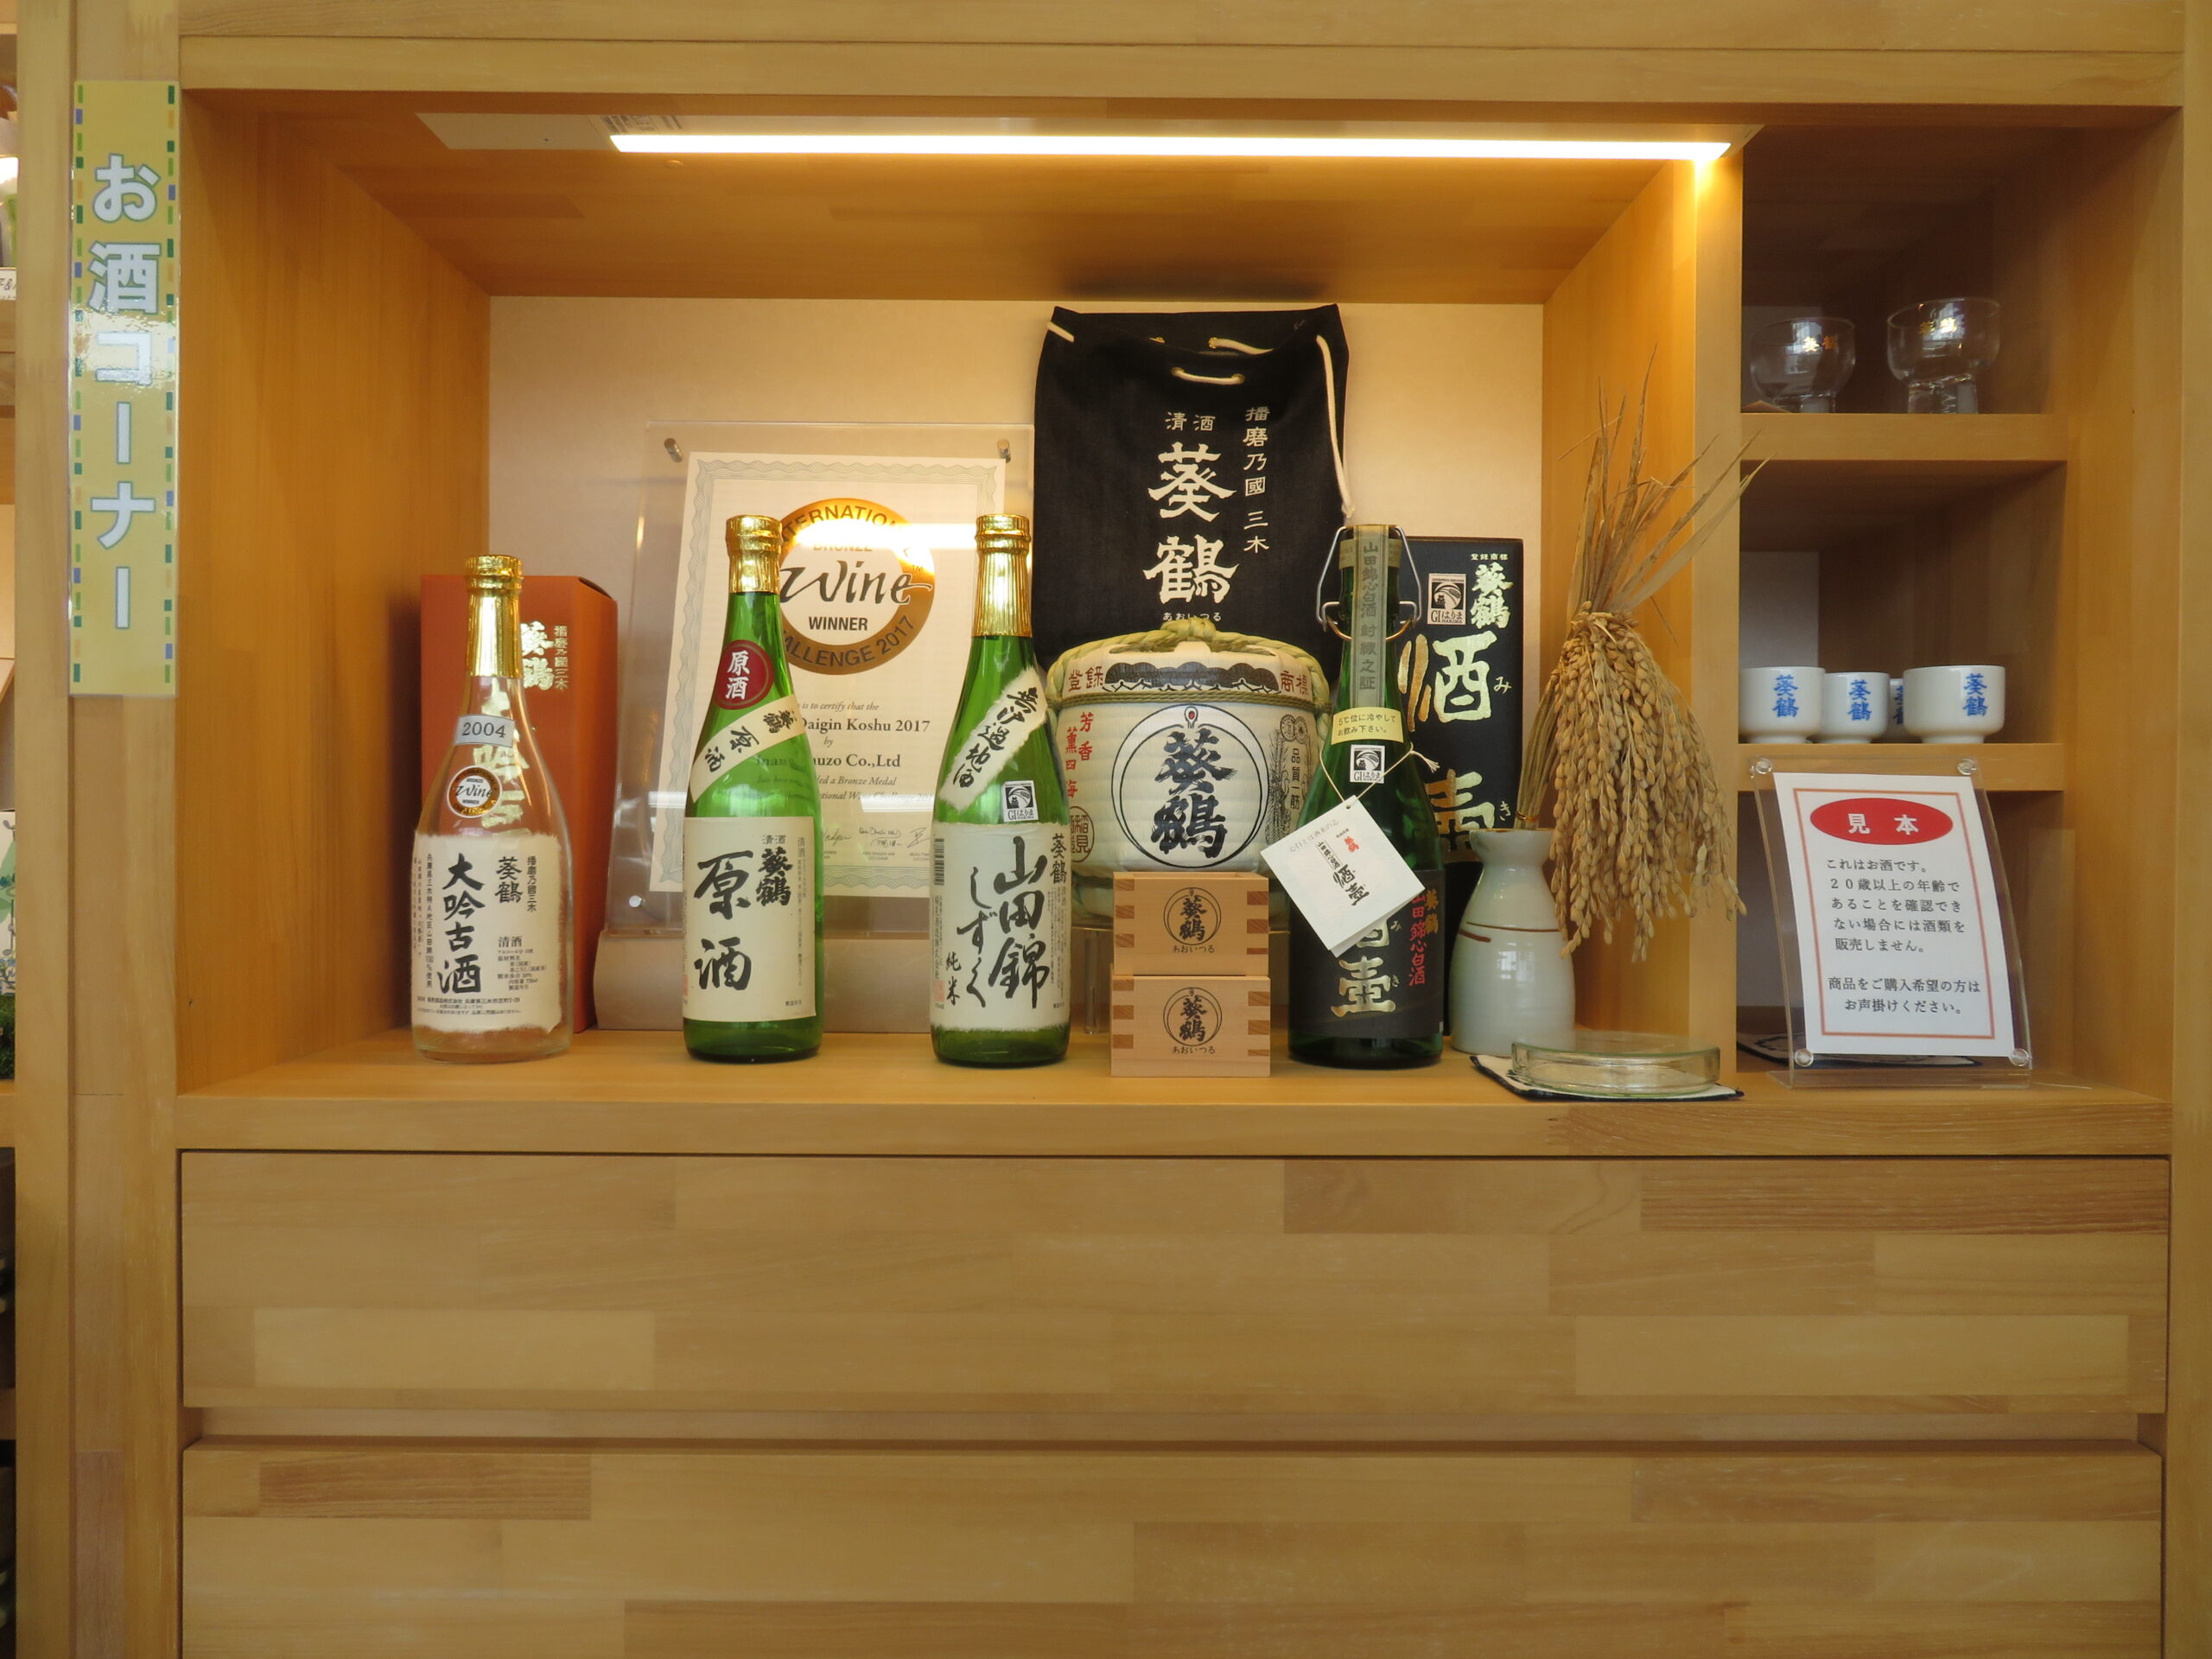 三木市観光協会で「山田錦」を使った日本酒を販売